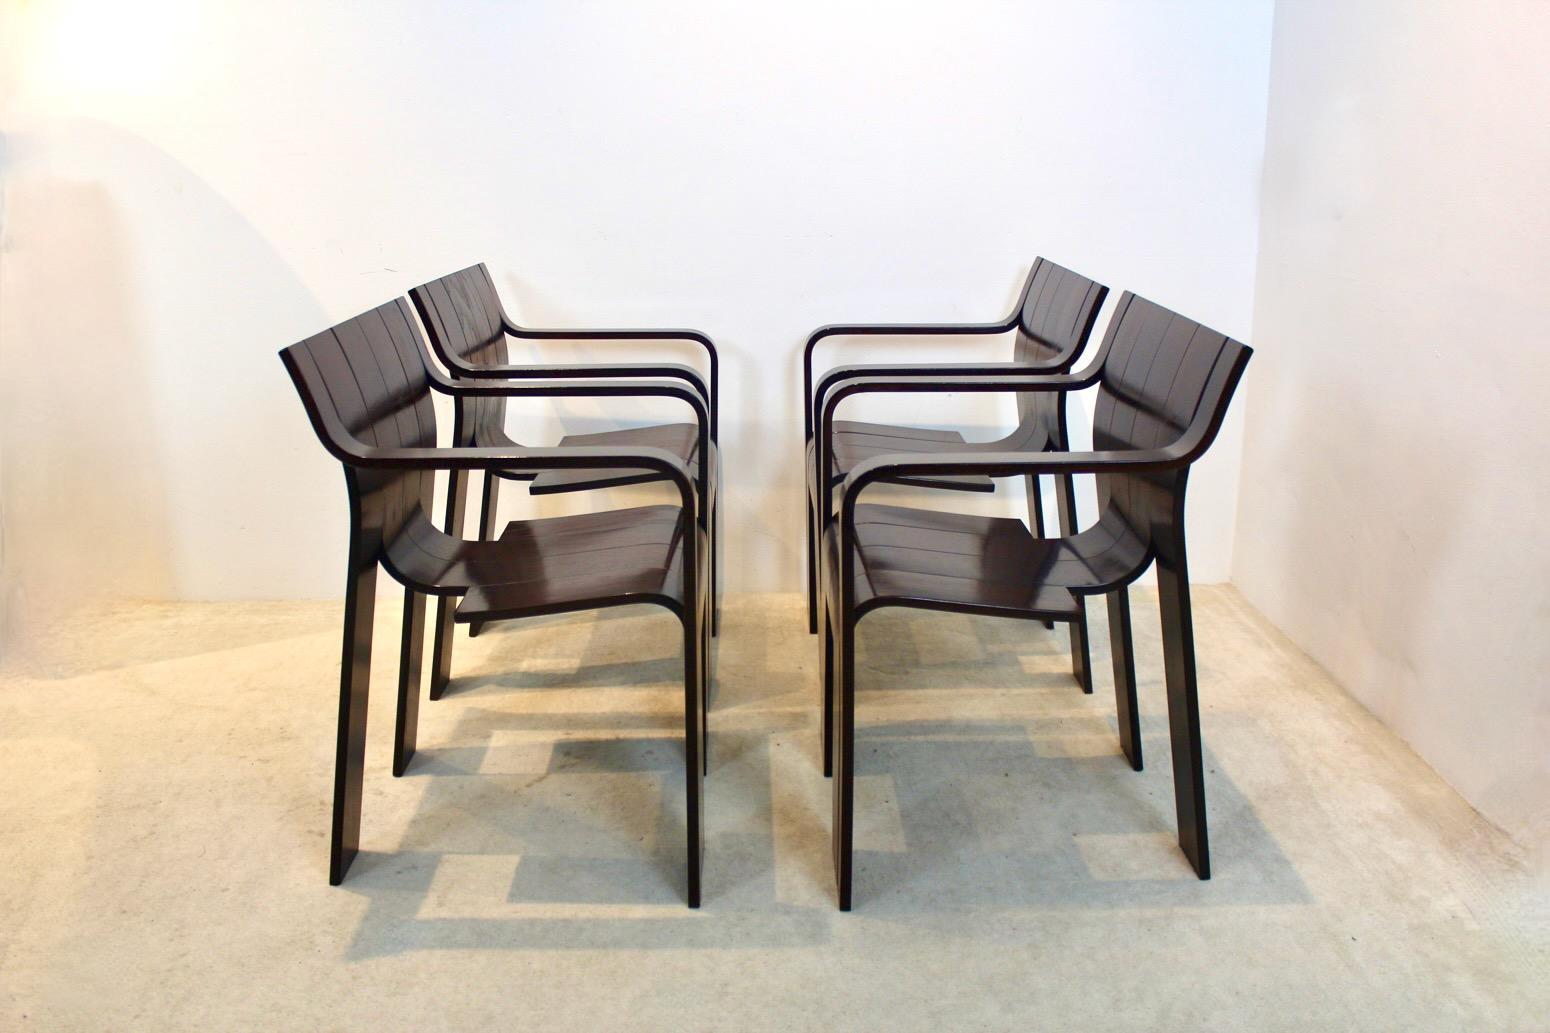 Sehr seltener Satz 'Strip' Esszimmerstühle mit Armlehnen, entworfen 1974 von Gijs Bakker für Castelijn in den Niederlanden (markiert). Nur eine begrenzte Anzahl dieser Stühle wurde mit Armlehnen hergestellt. Dieses originelle Design besteht aus